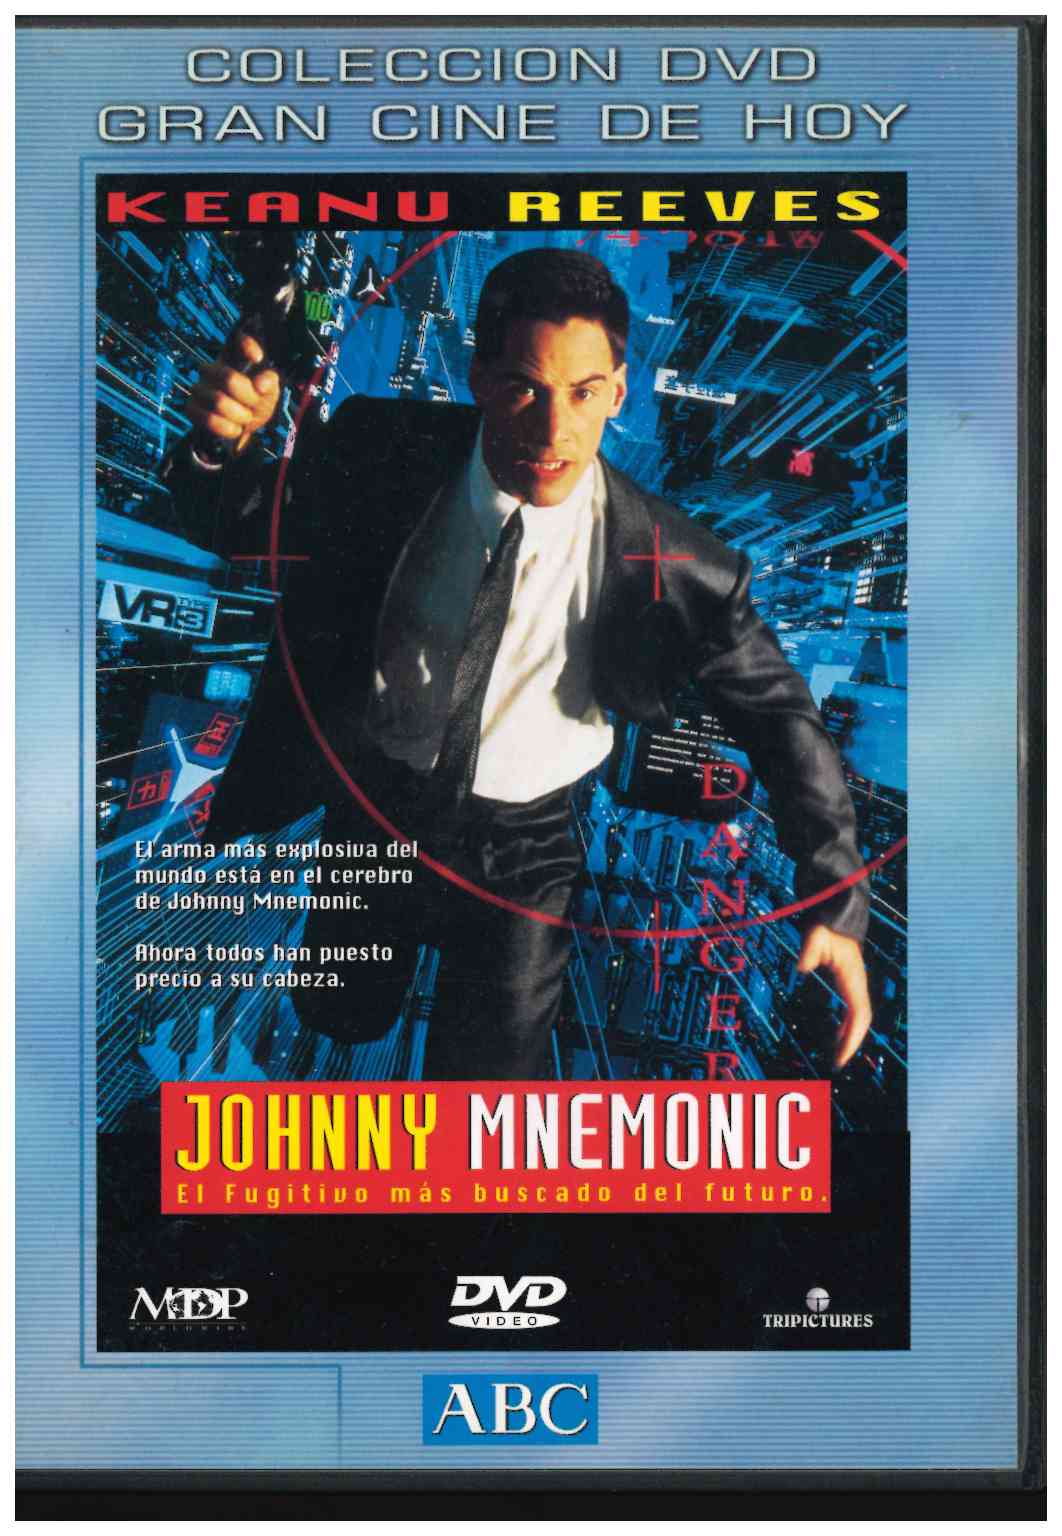 Johnny Mnemonic. Colección Gran Cine de hoy. Keanu Reeves